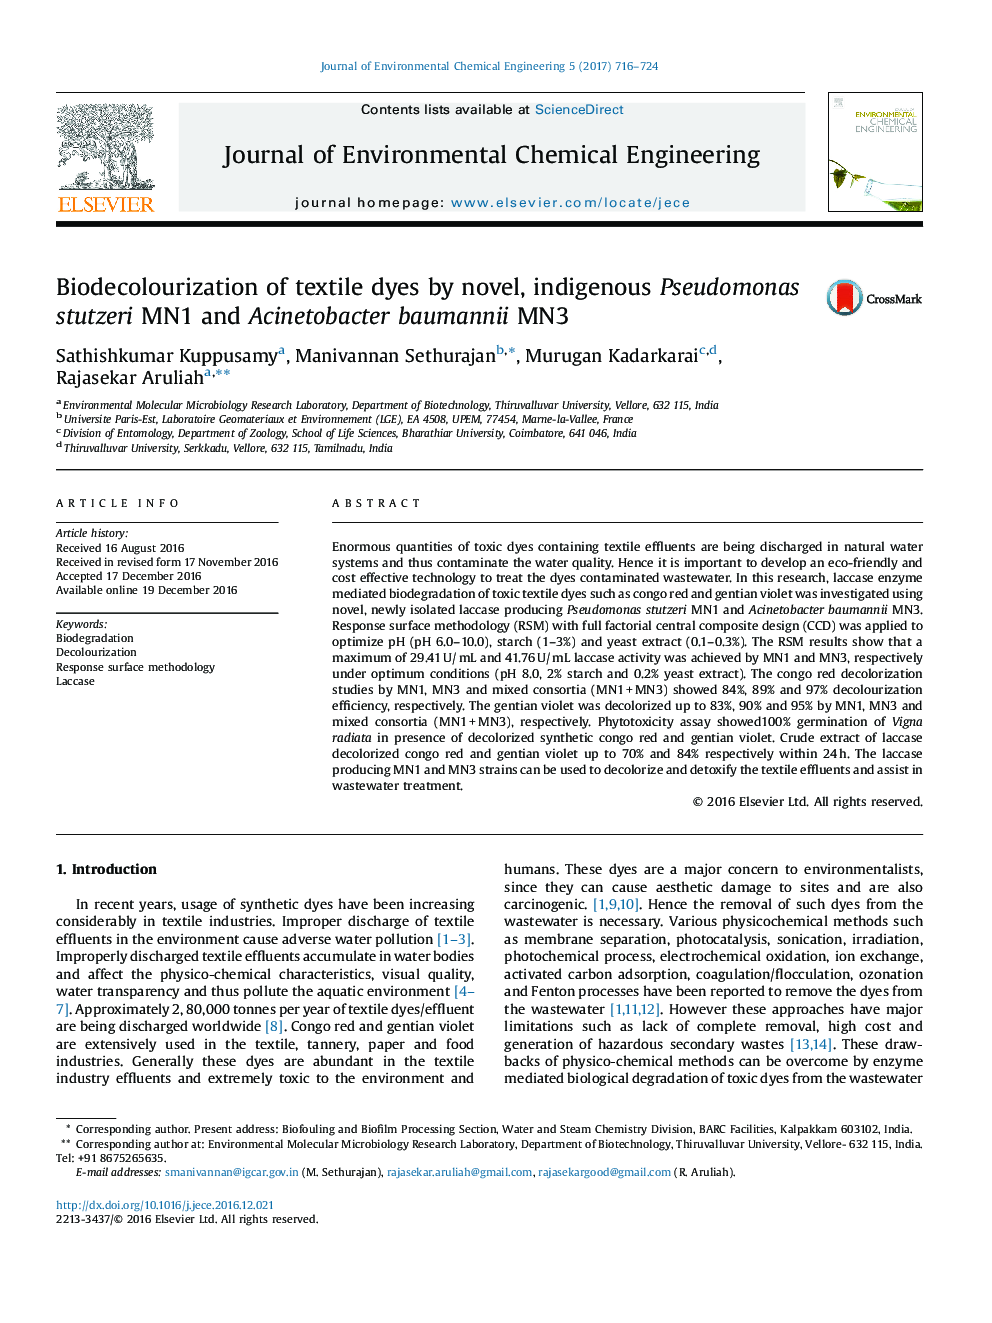 Biodecolourization of textile dyes by novel, indigenous Pseudomonas stutzeri MN1 and Acinetobacter baumannii MN3